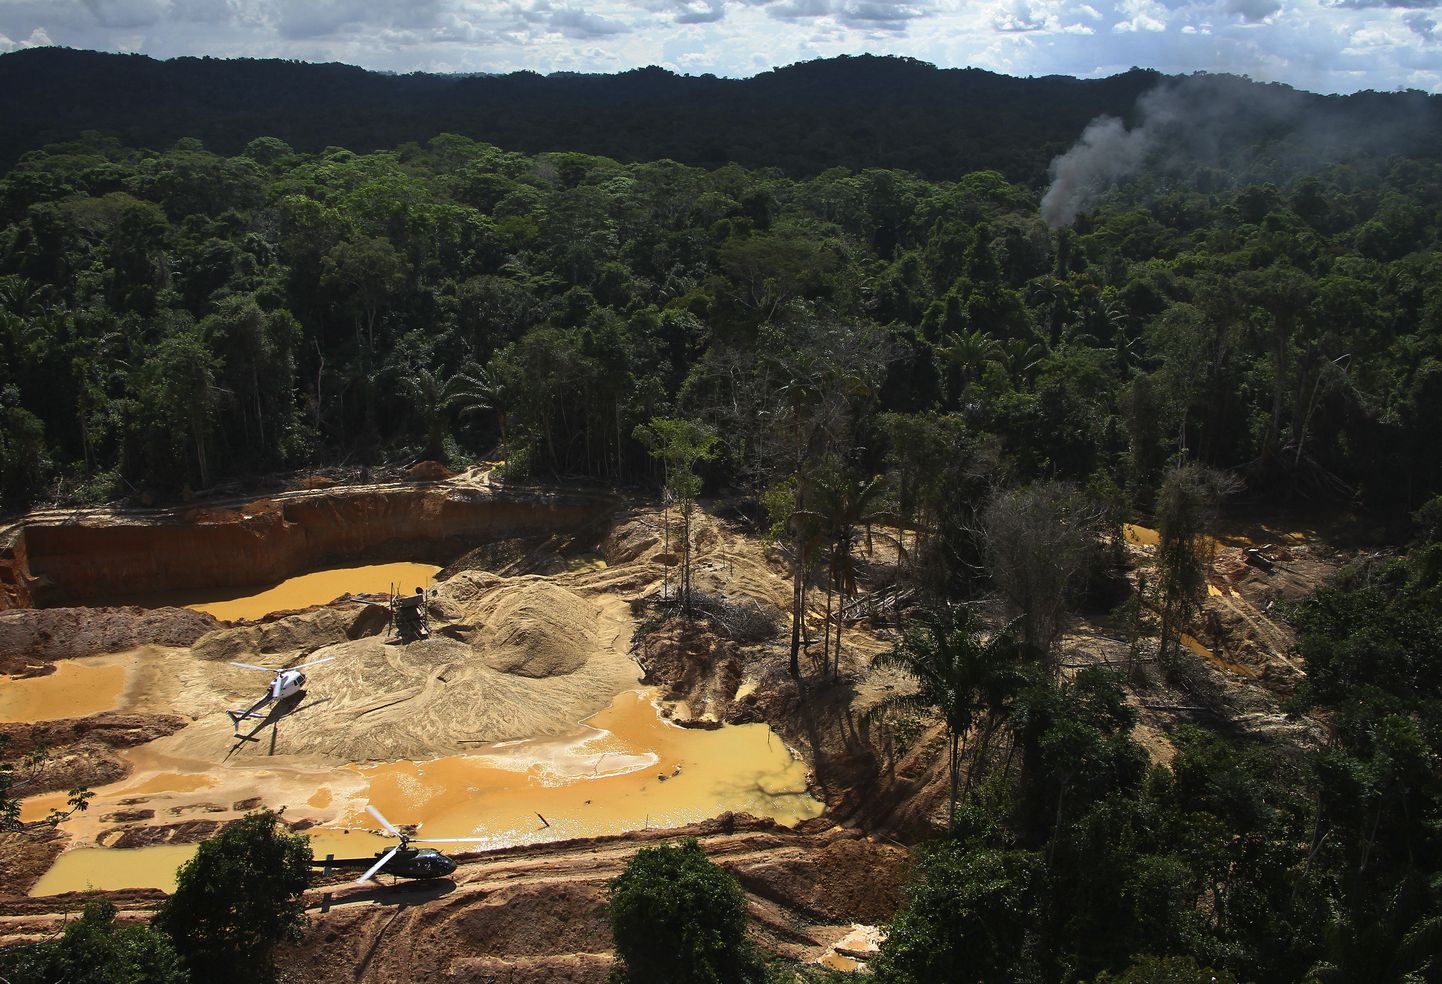 Brasiilia keskkonnaagentuuri kopterilt tehtud ülesvõte ebaseaduslikust kaevandusest yanomami hõimu reservaadis, mille pindala on üle kahe korra suurem Eesti omast.